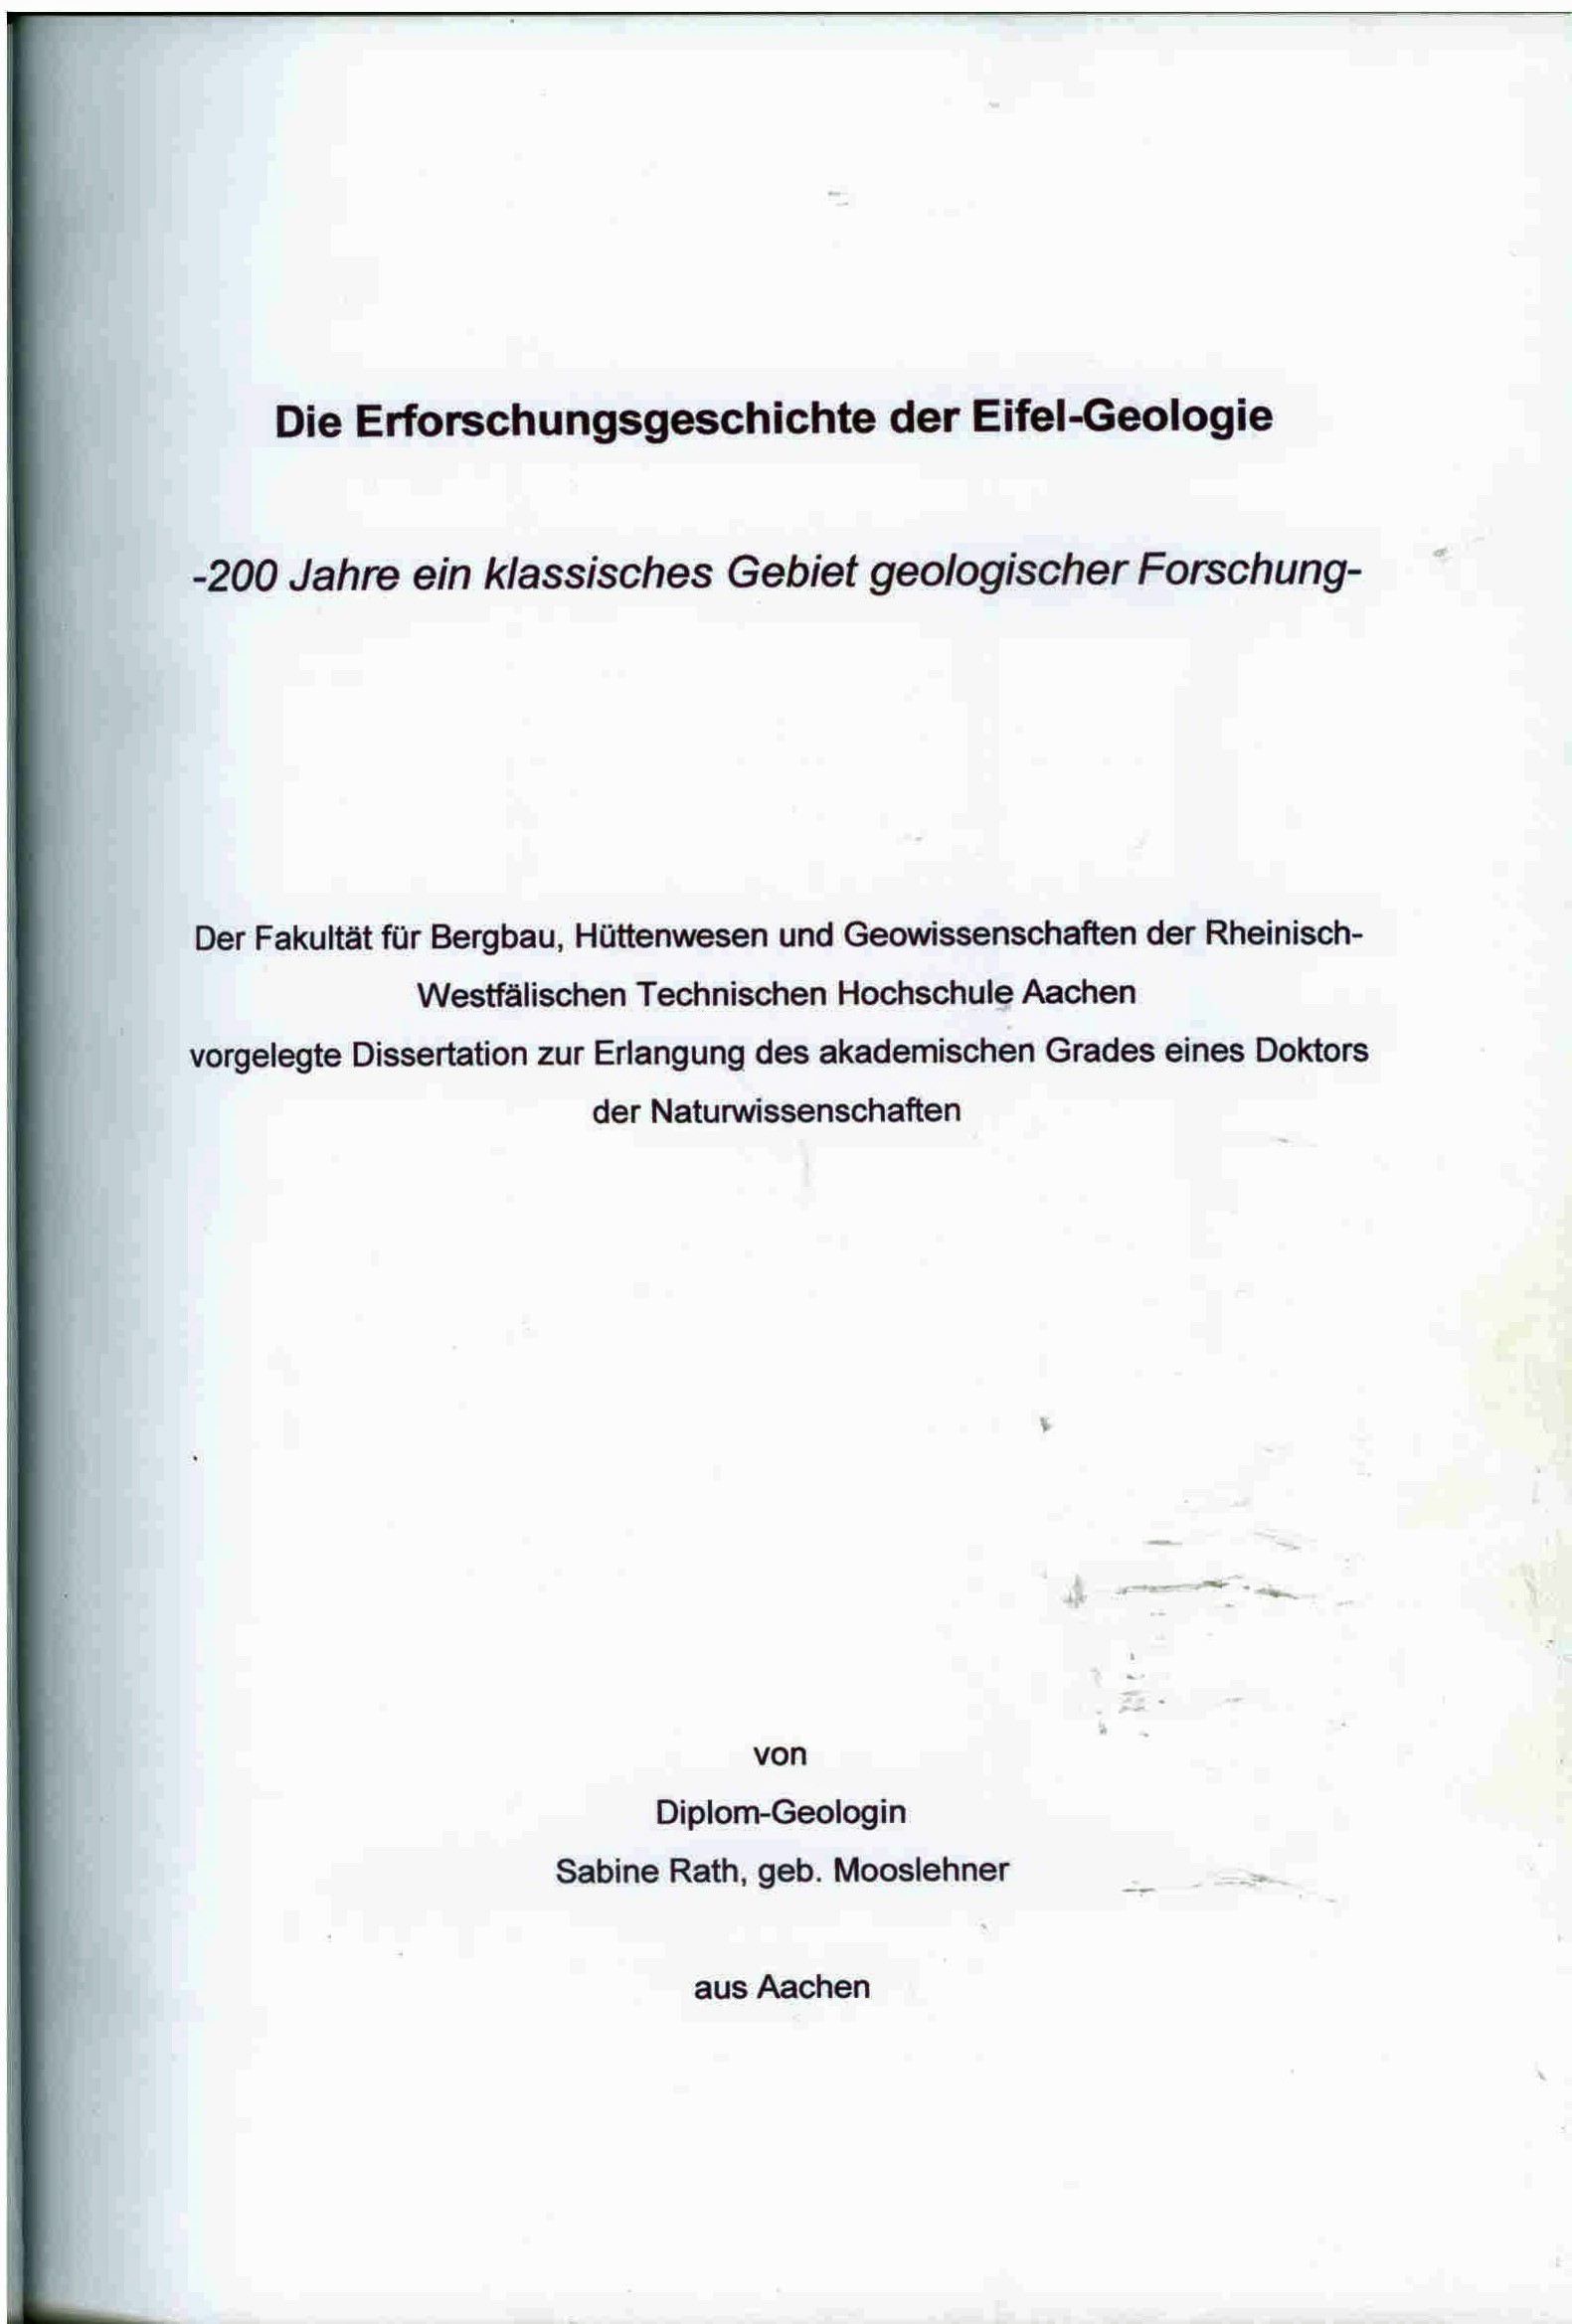 Rath, S.: Die Erforschungsgeschichte der Eifel-Geologie. 200 Jahre ein klassisches Gebiet geologischer Forschung.